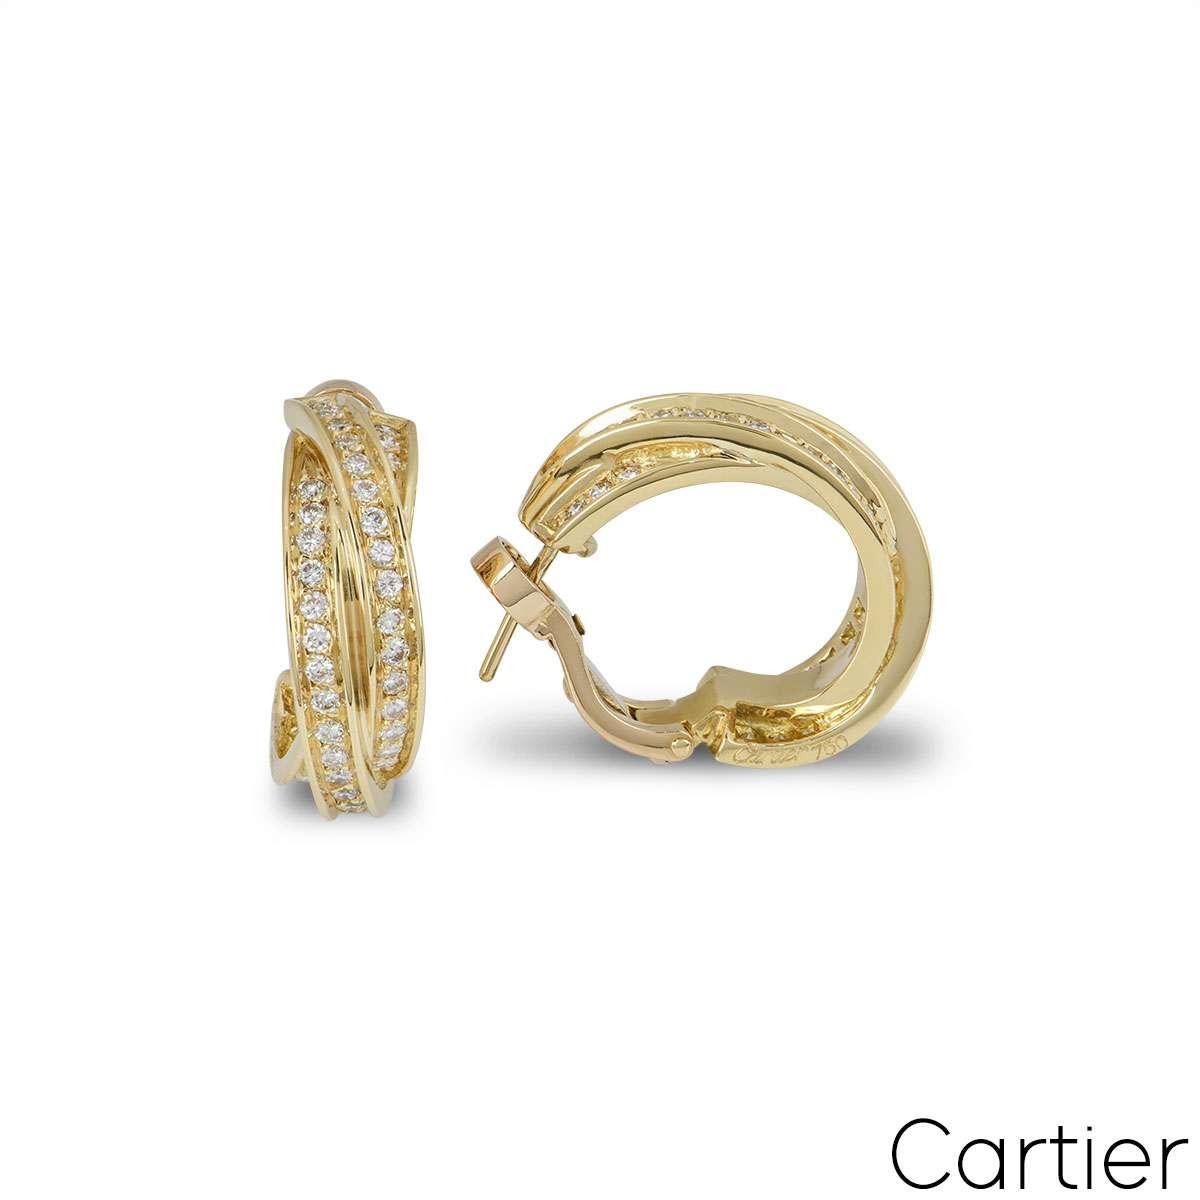 Paire de boucles d'oreilles en or jaune 18 cartier avec diamants de la collection Trinity de Cartier. Les boucles d'oreilles se composent de trois bandes d'or jaune entrelacées, serties de diamants ronds de taille brillant. Les diamants ont un poids